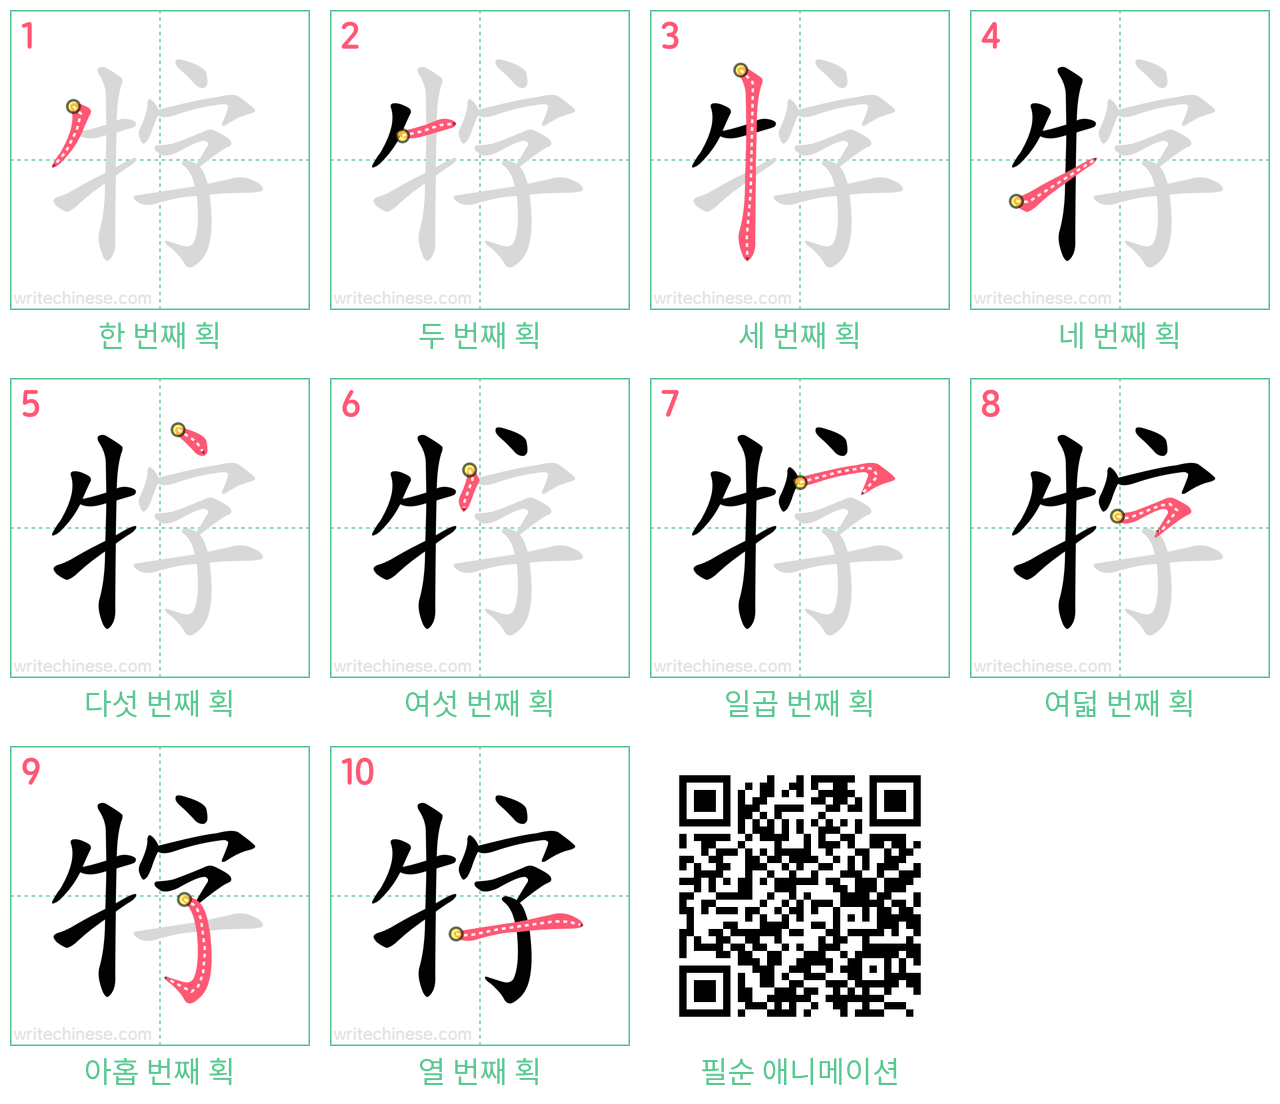 牸 step-by-step stroke order diagrams